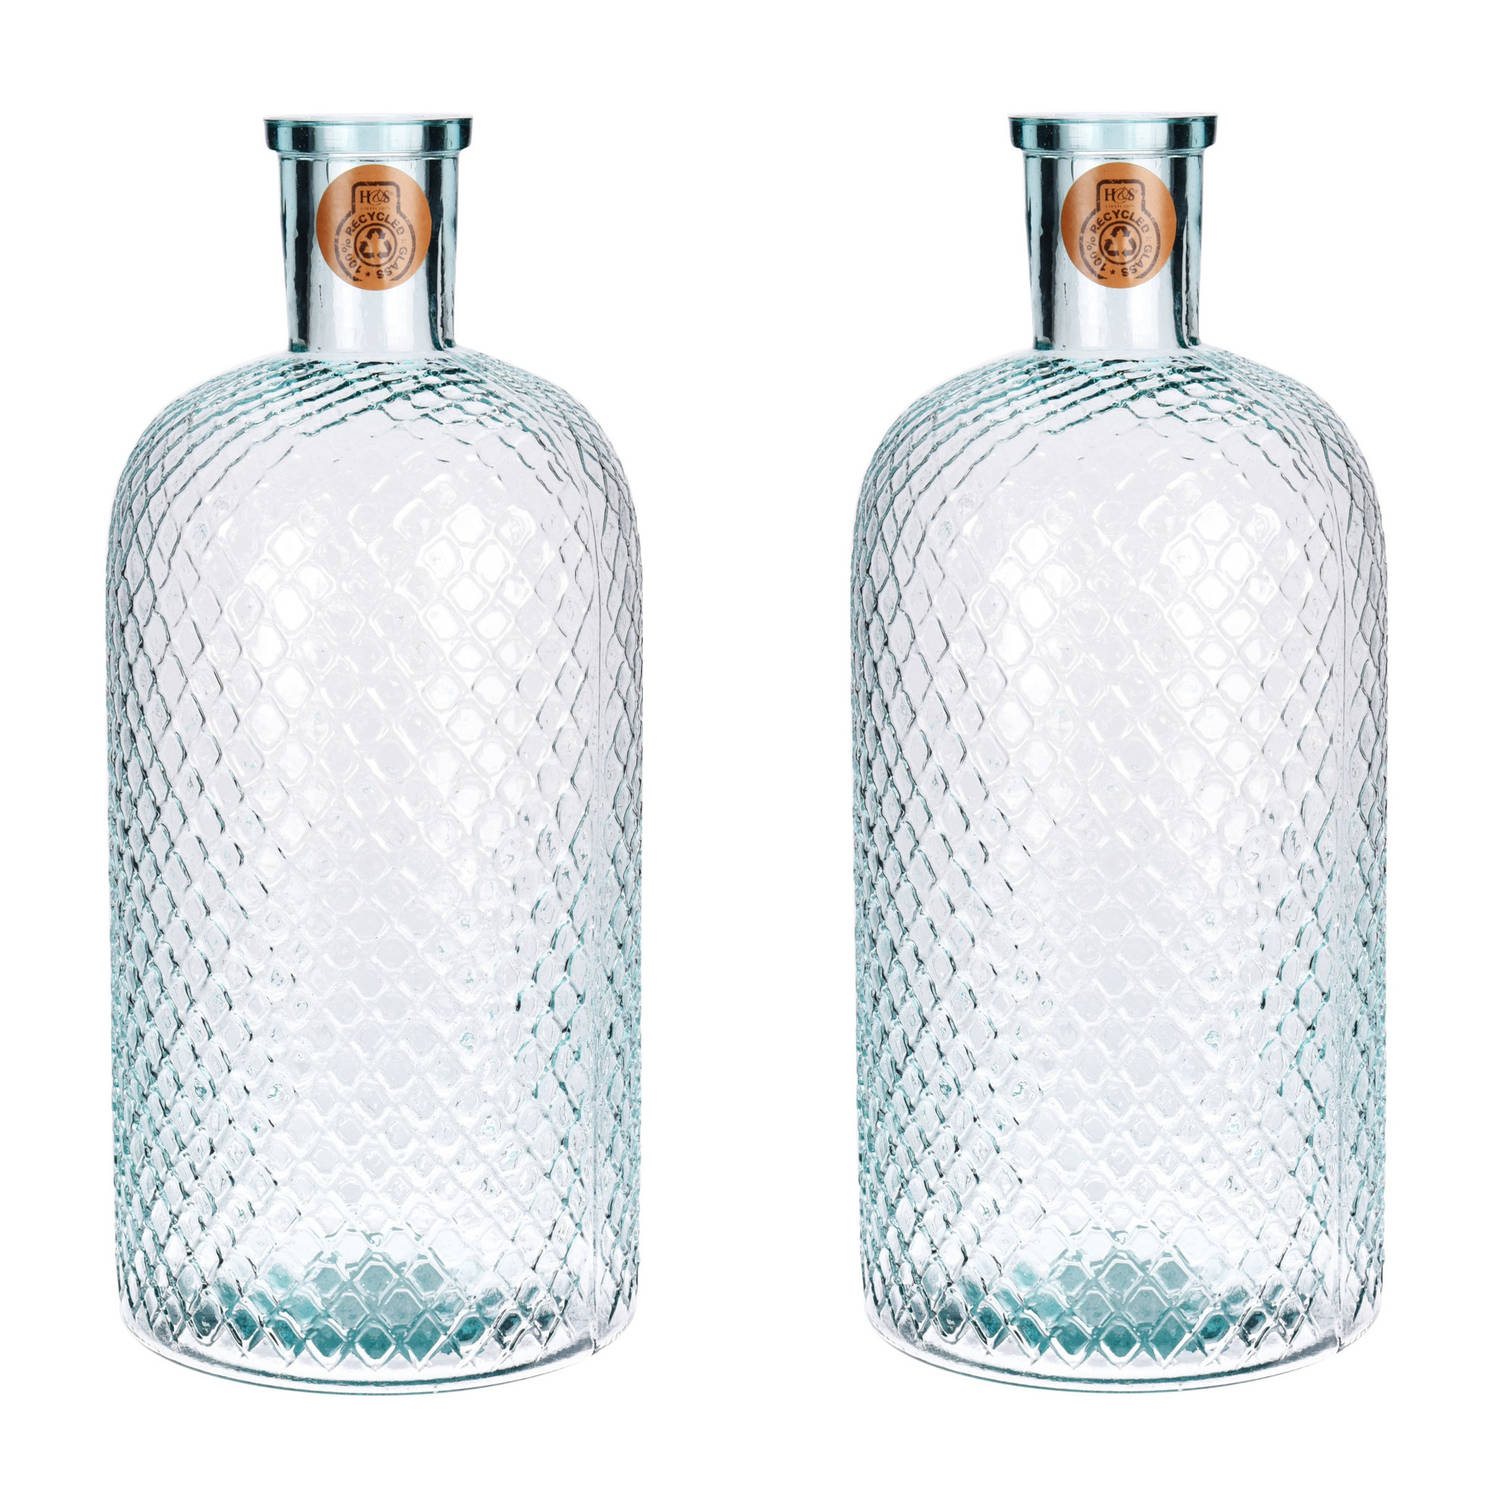 2x Glazen Vaas/vazen 8 Liter Van 19 X 42 Cm - Bloemenvazen - Glazen Vazen Voor Bloemen En Takken